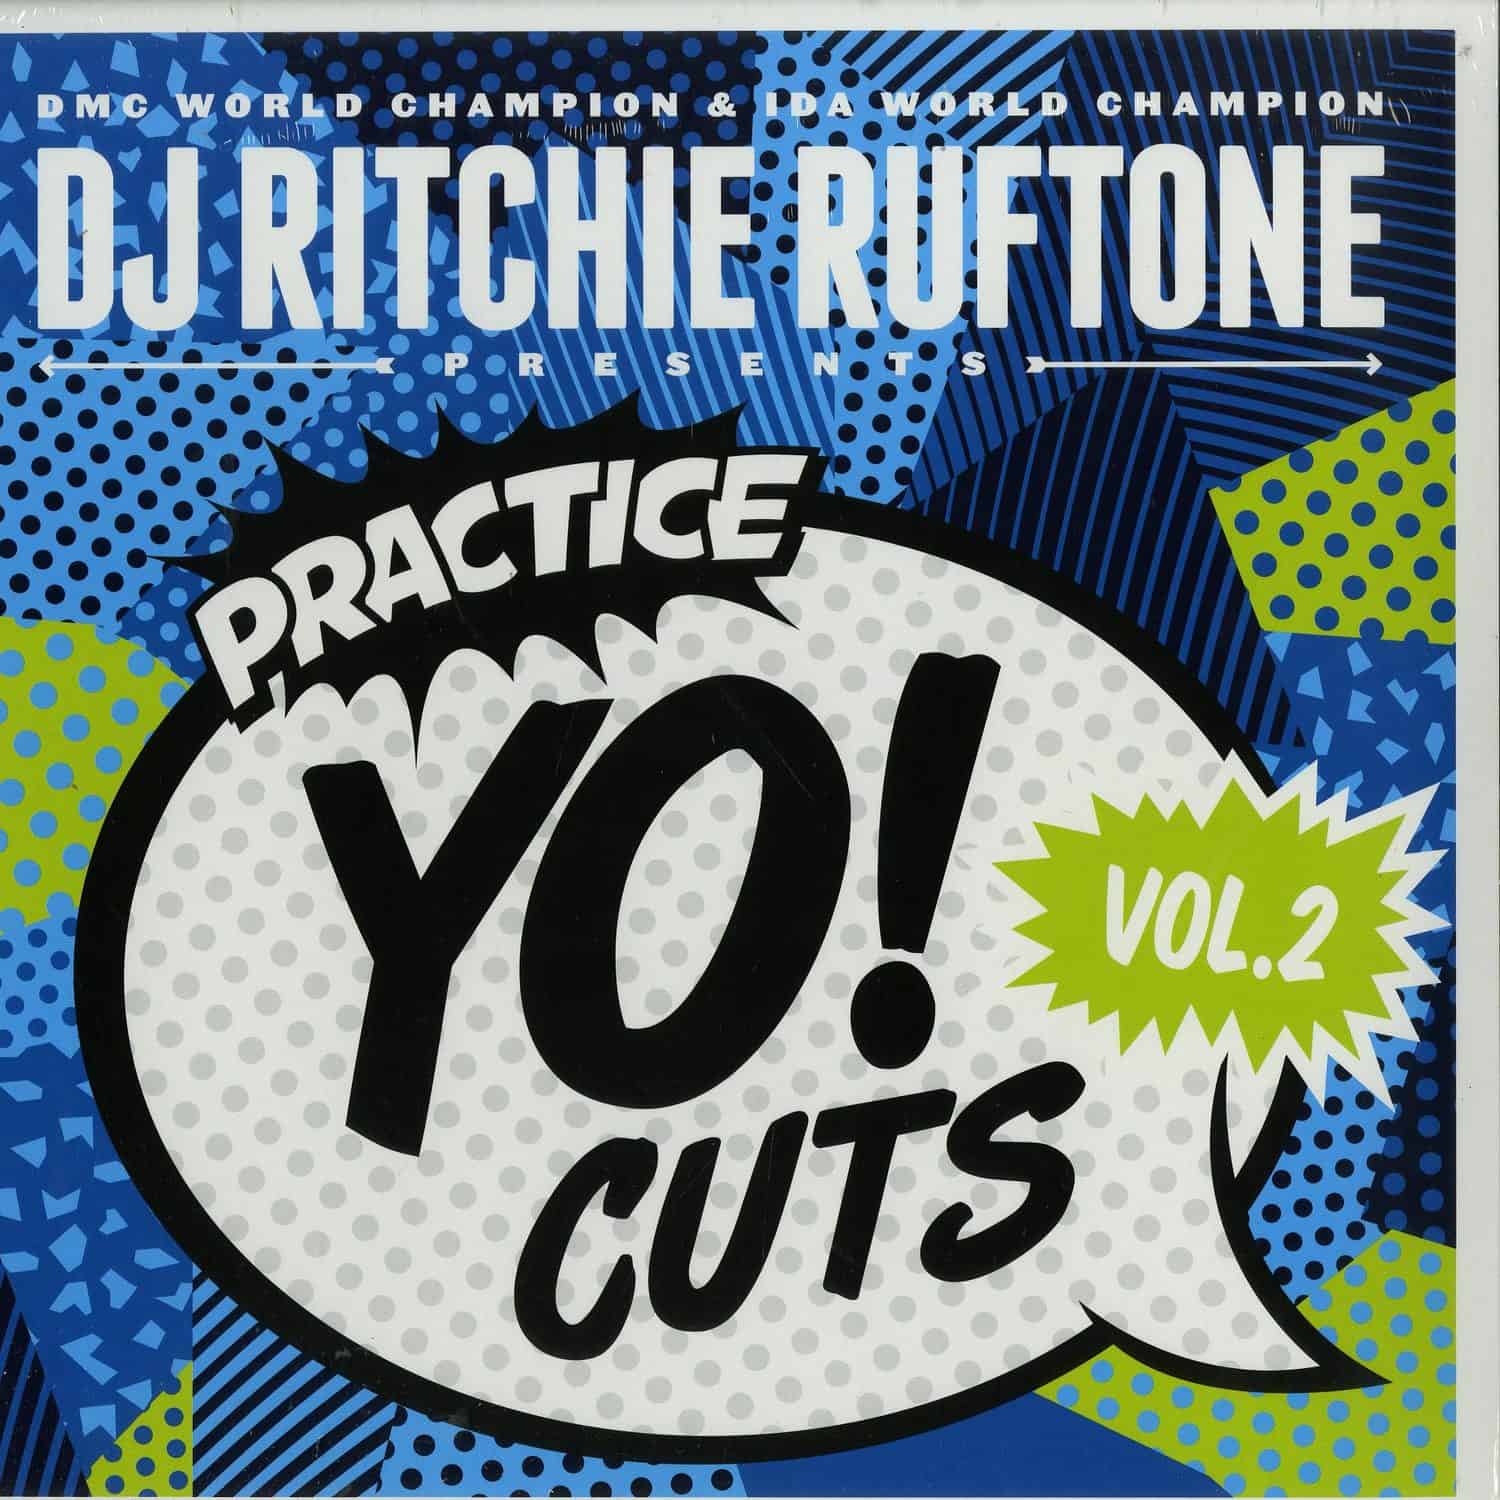 DJ Ritchie Ruftone - PRACTICE YO CUTS VOL. 2